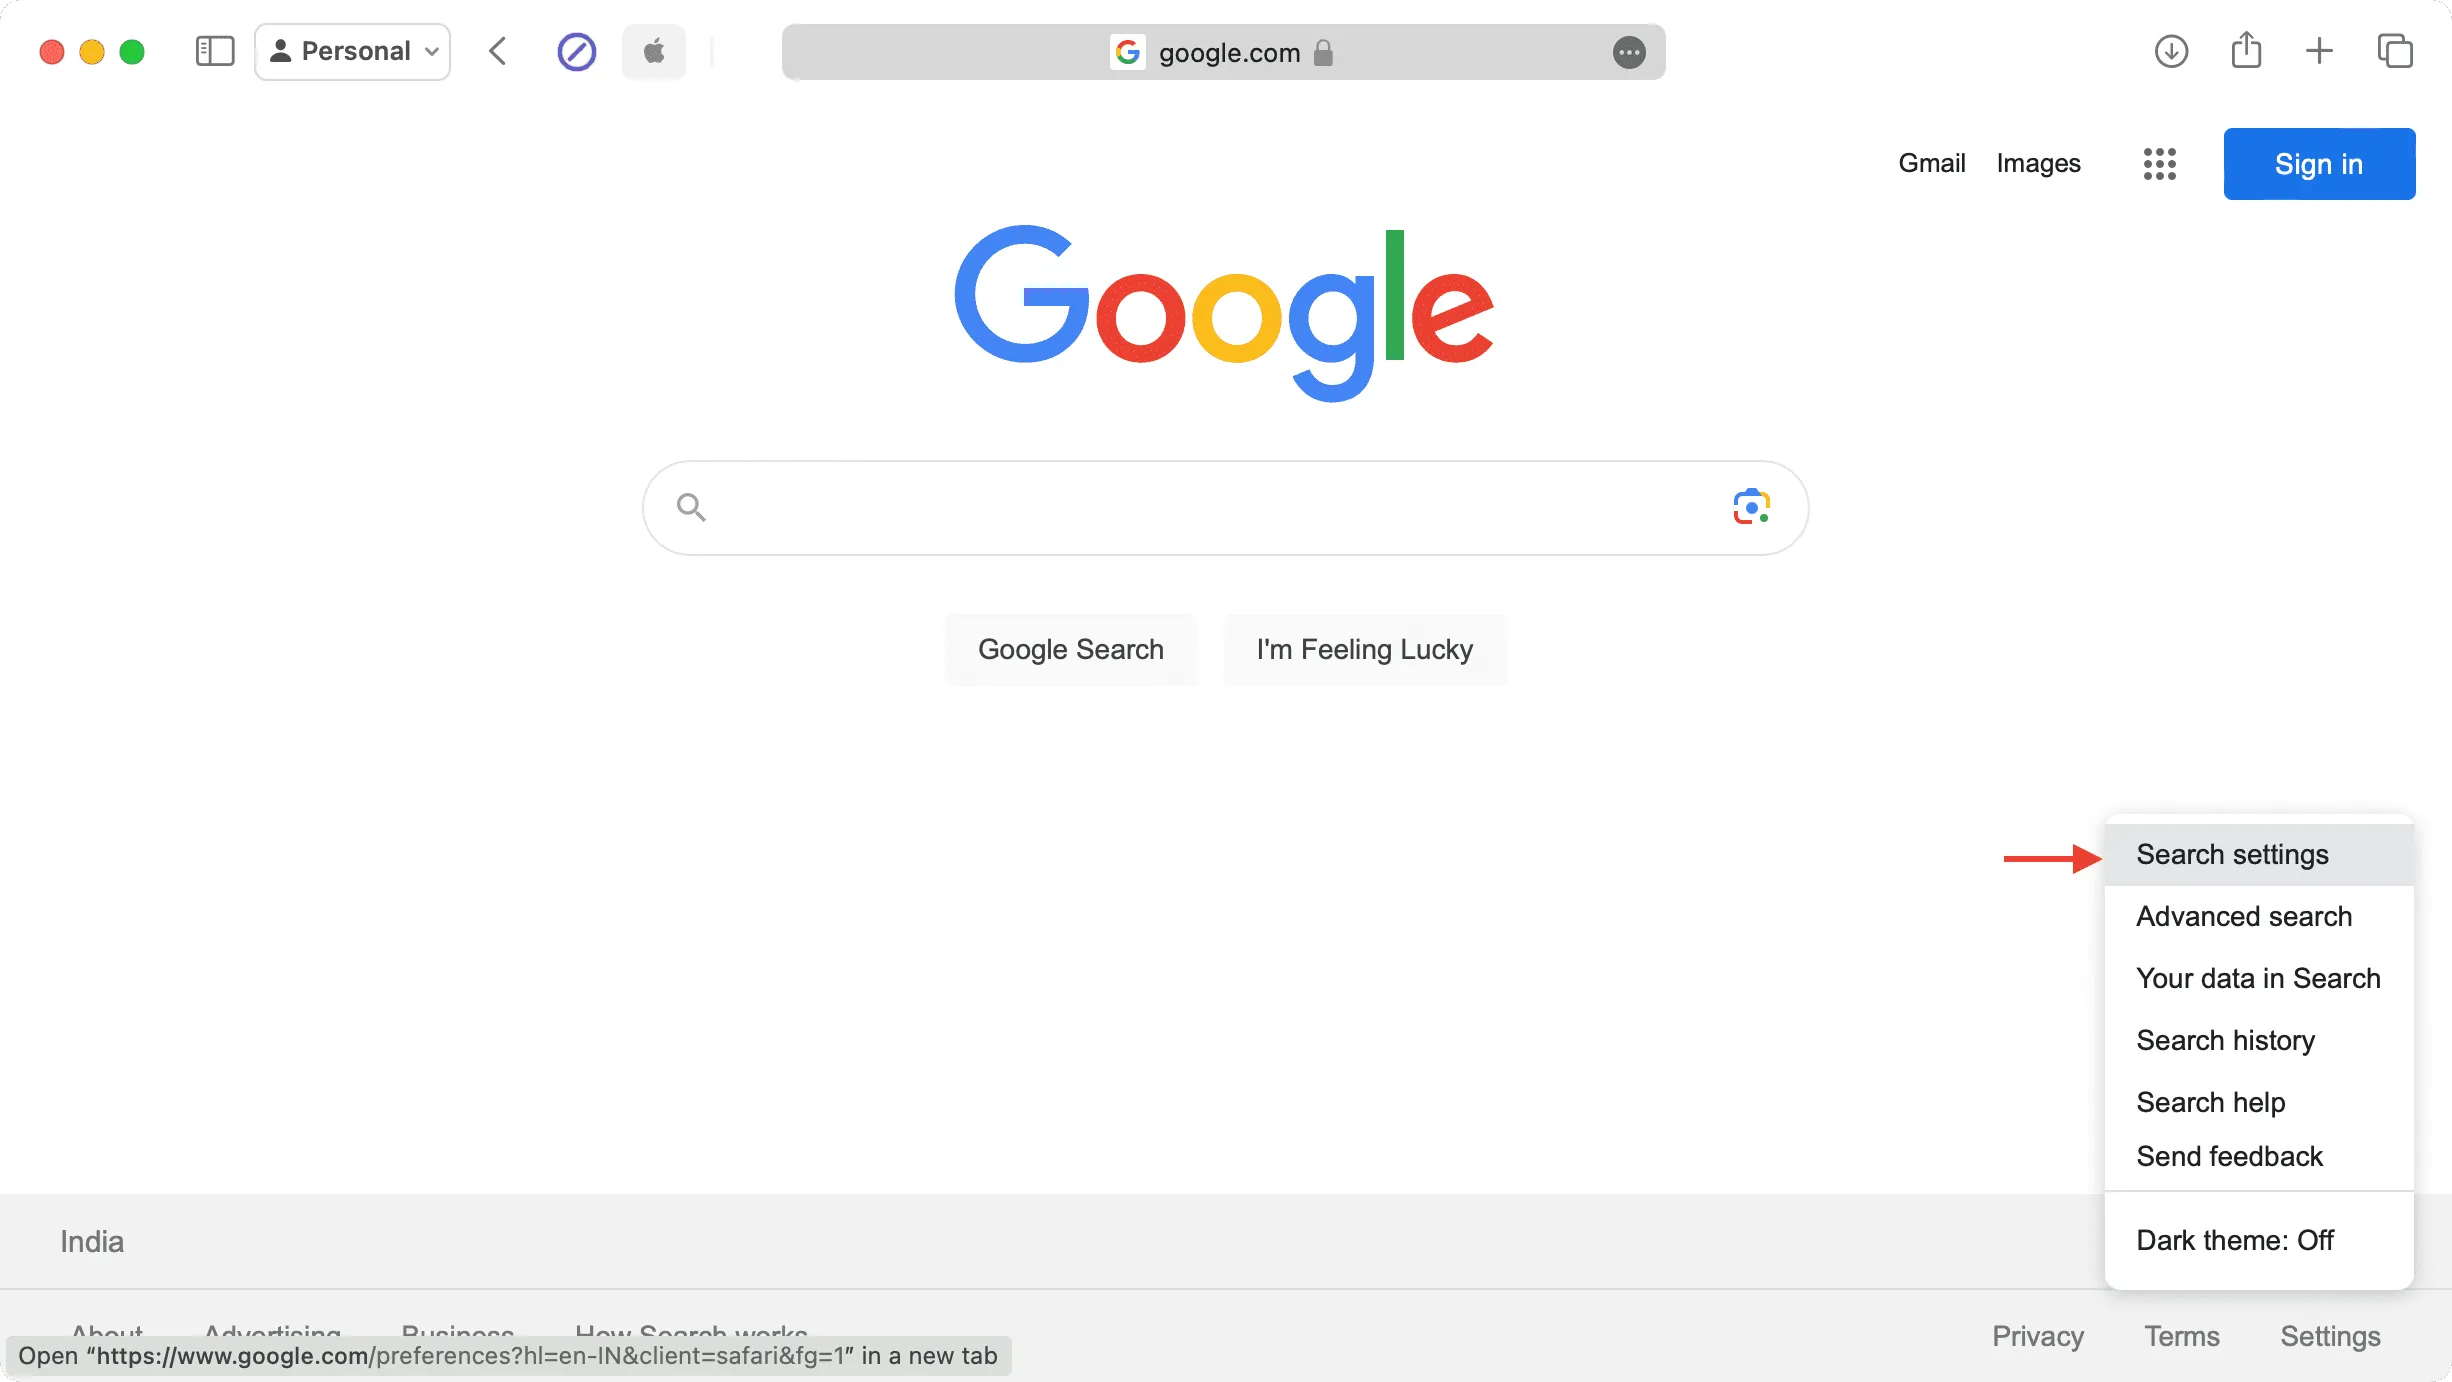 Sucheinstellungen im Google-Web